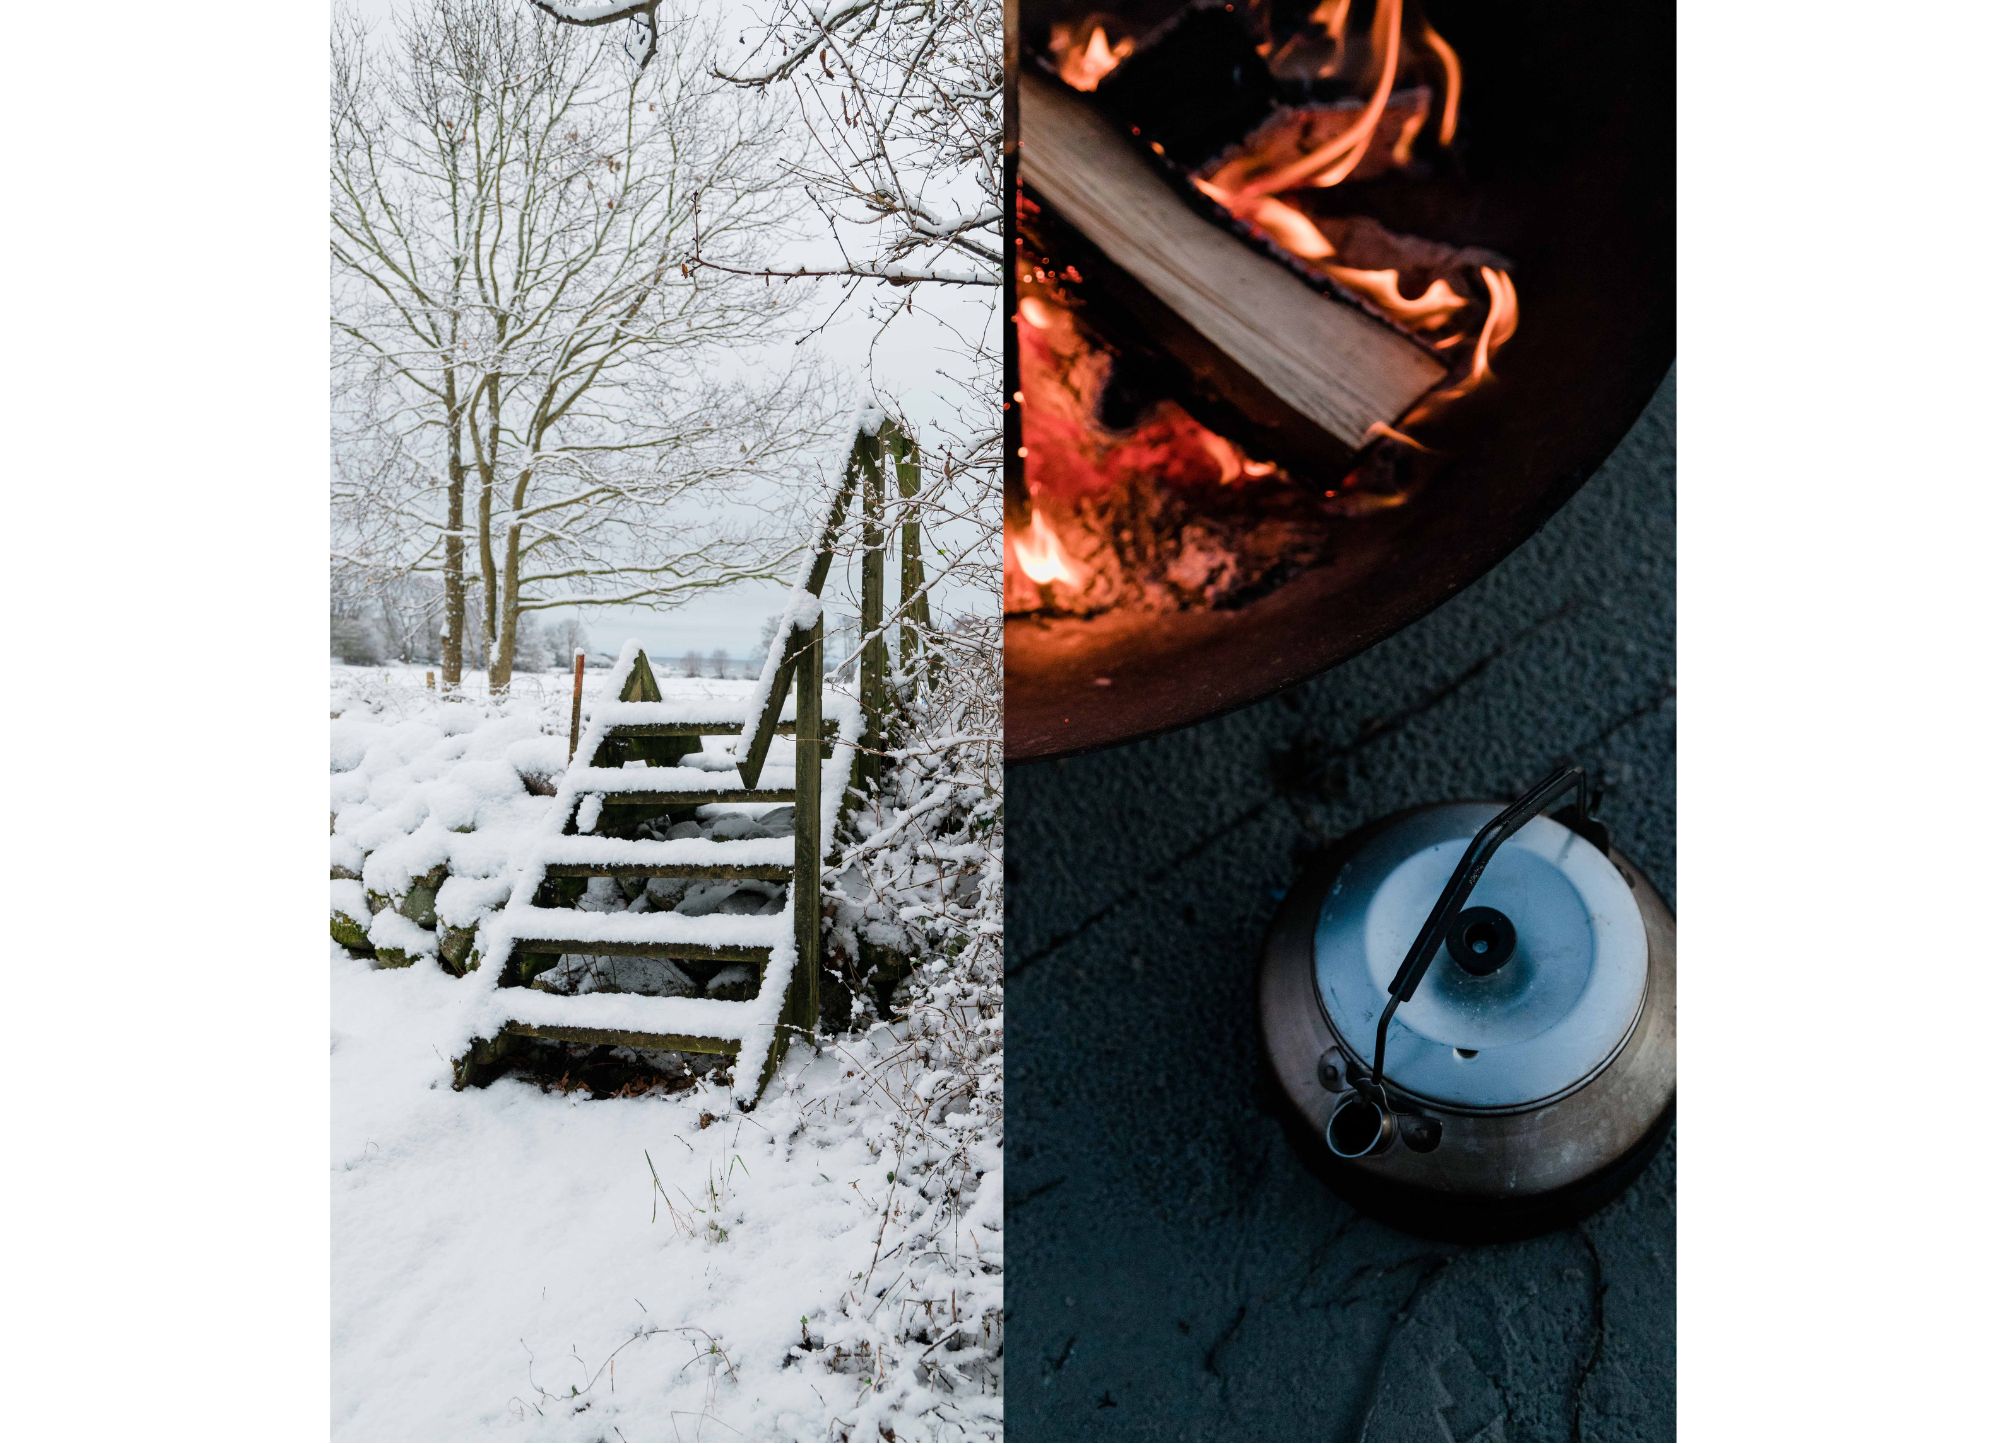 En kittel med varm glögg över öppen eld. Vinter i Blekinges skärgård.